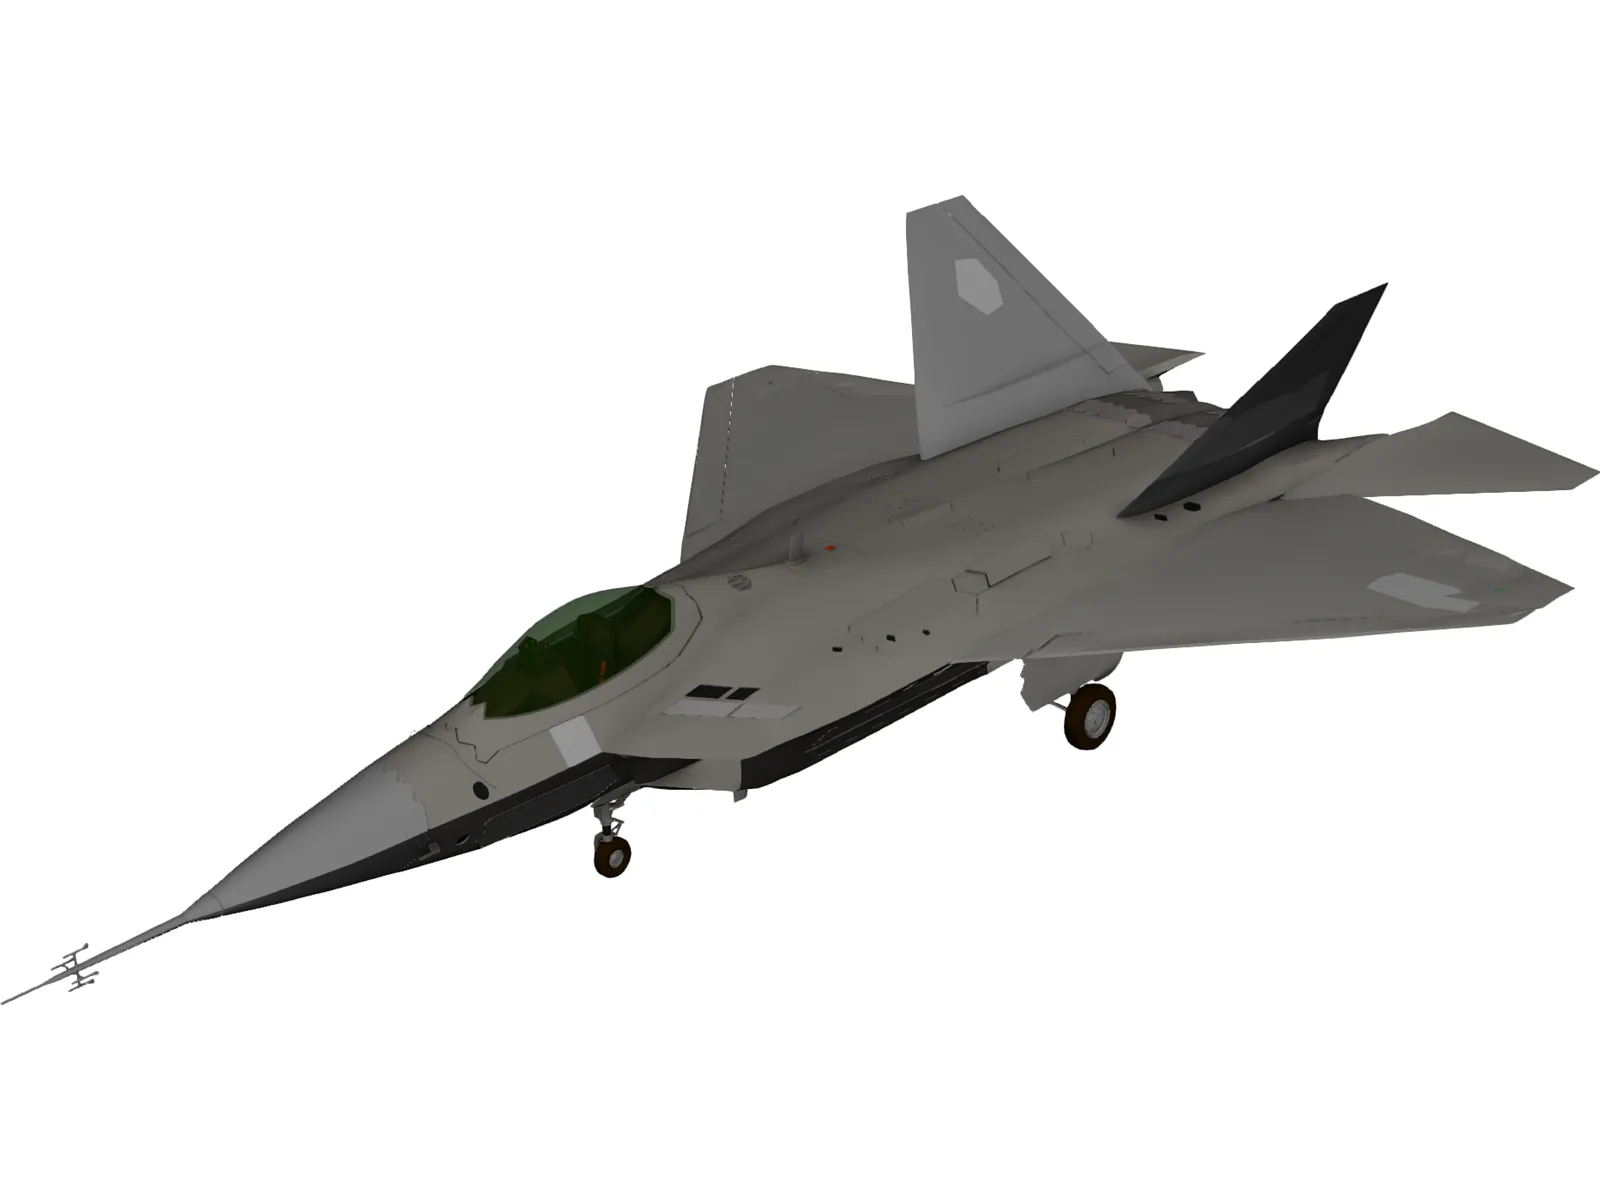 YF-22 Lightning 3D Model